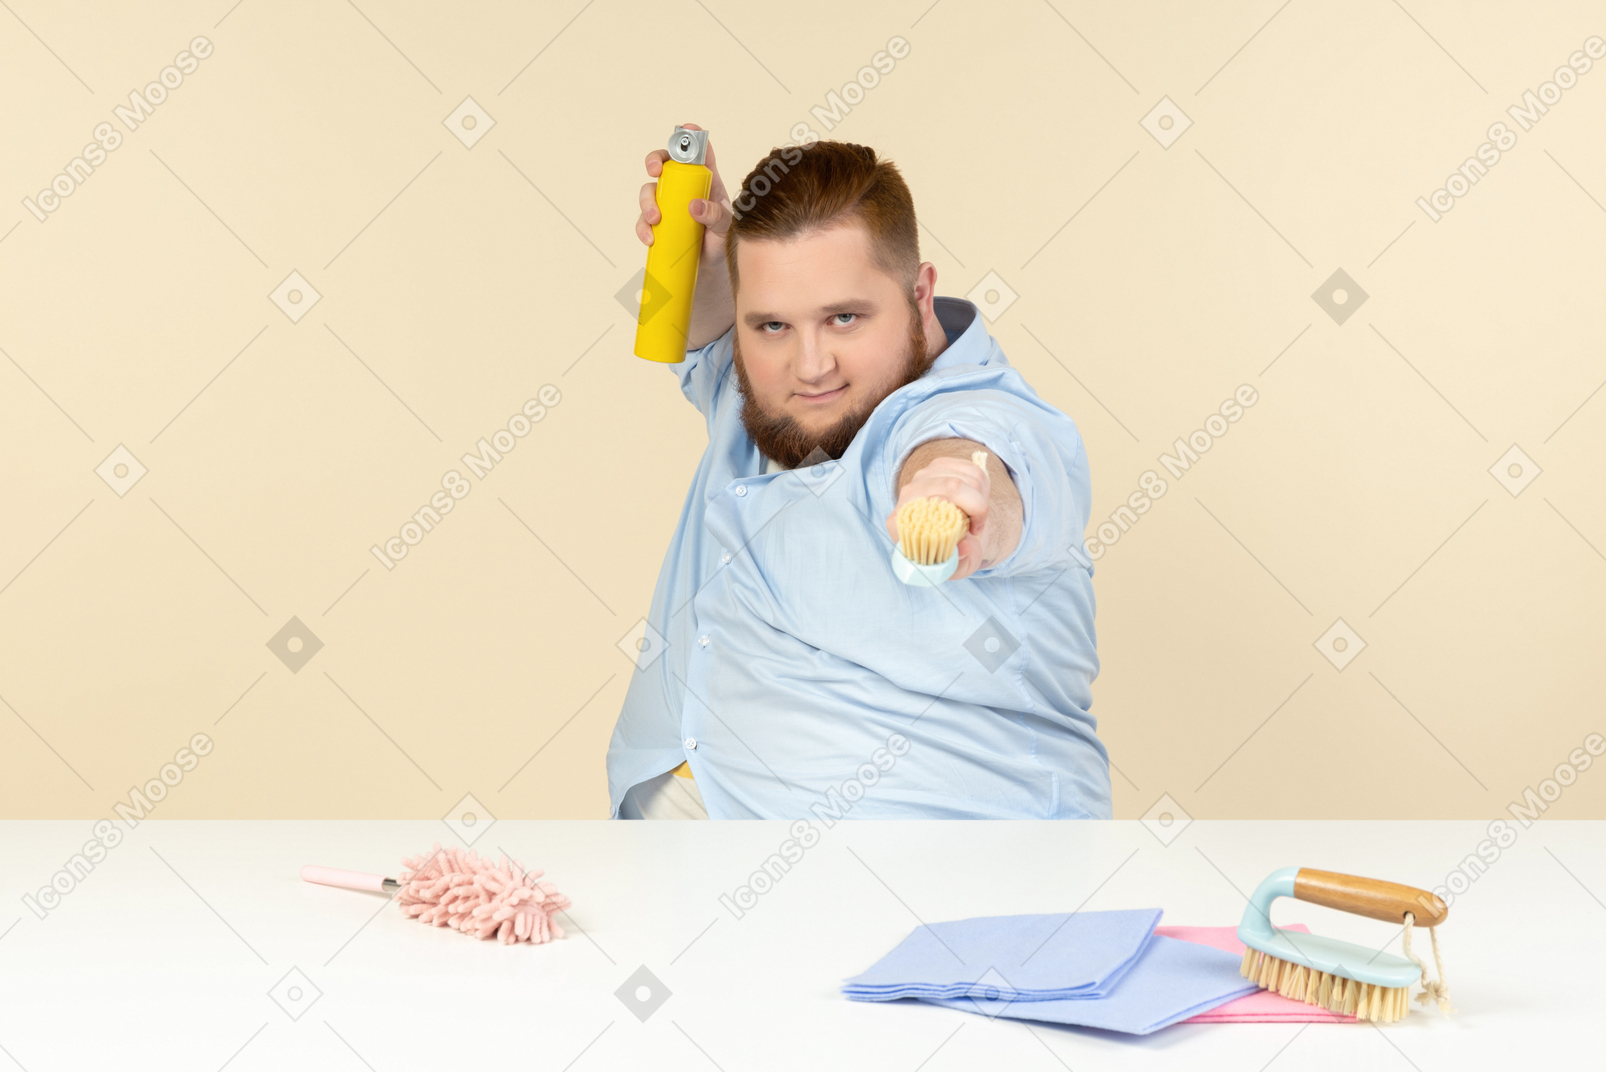 Junger übergewichtiger mann, der am tisch sitzt und reinigungsgeräte hält